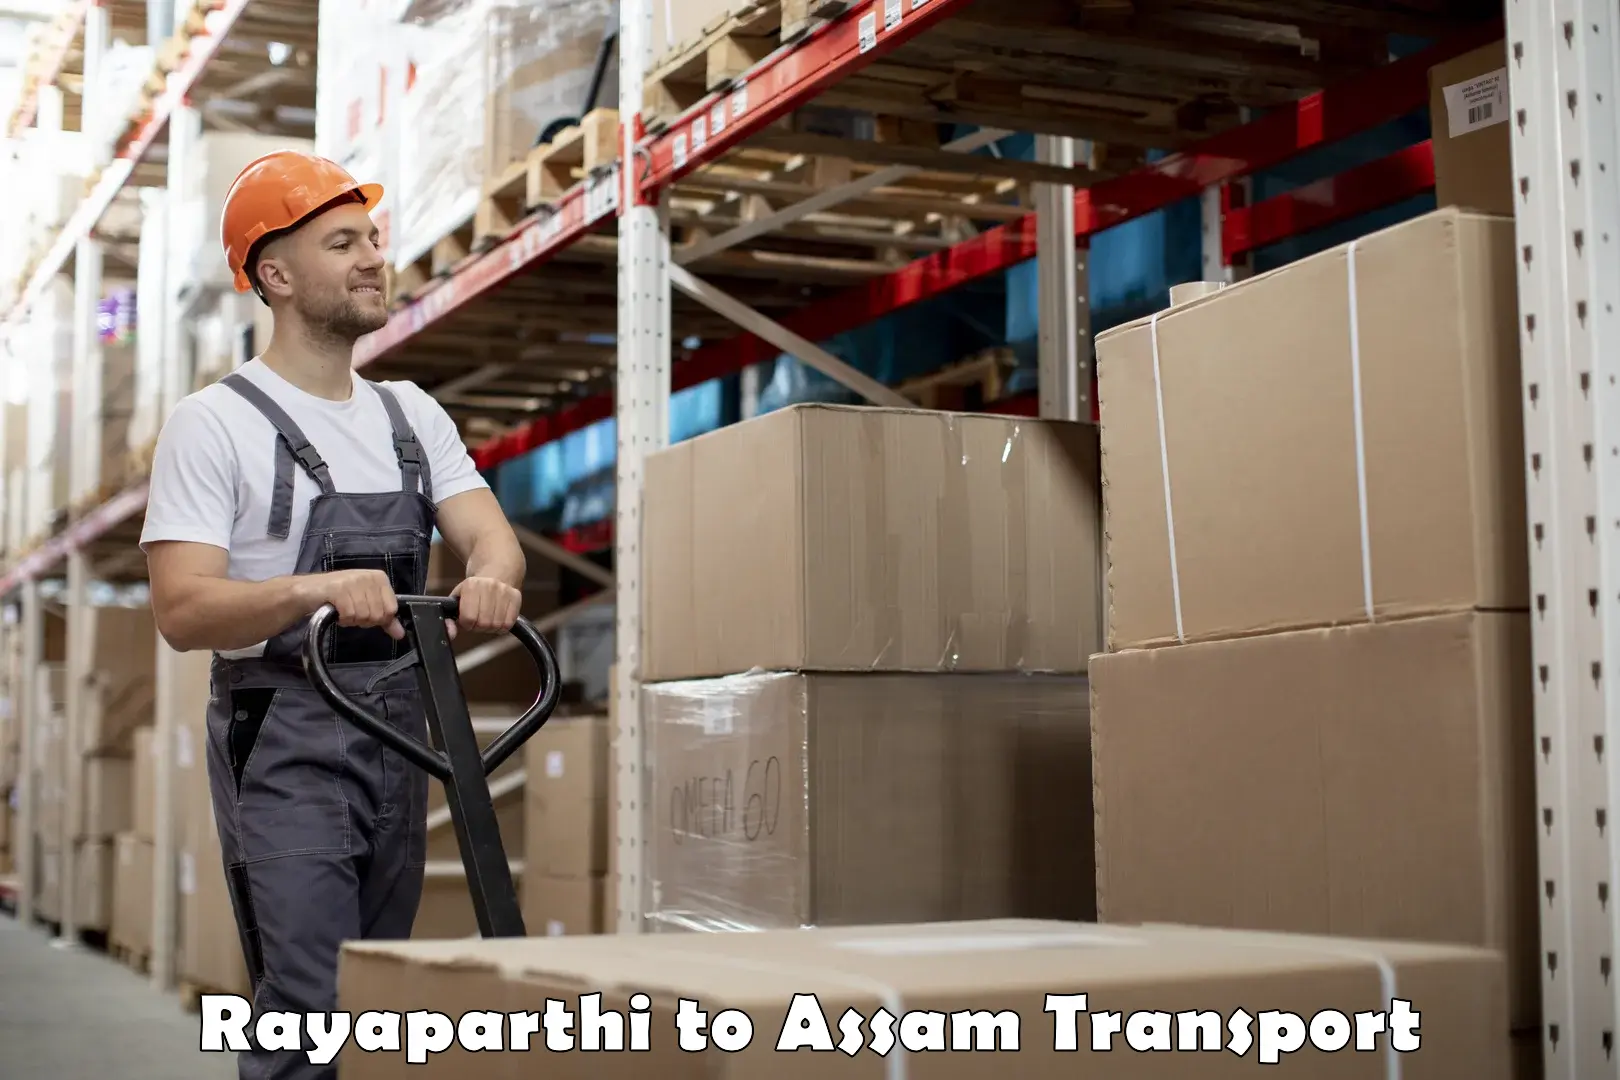 Two wheeler transport services Rayaparthi to Dhekiajuli